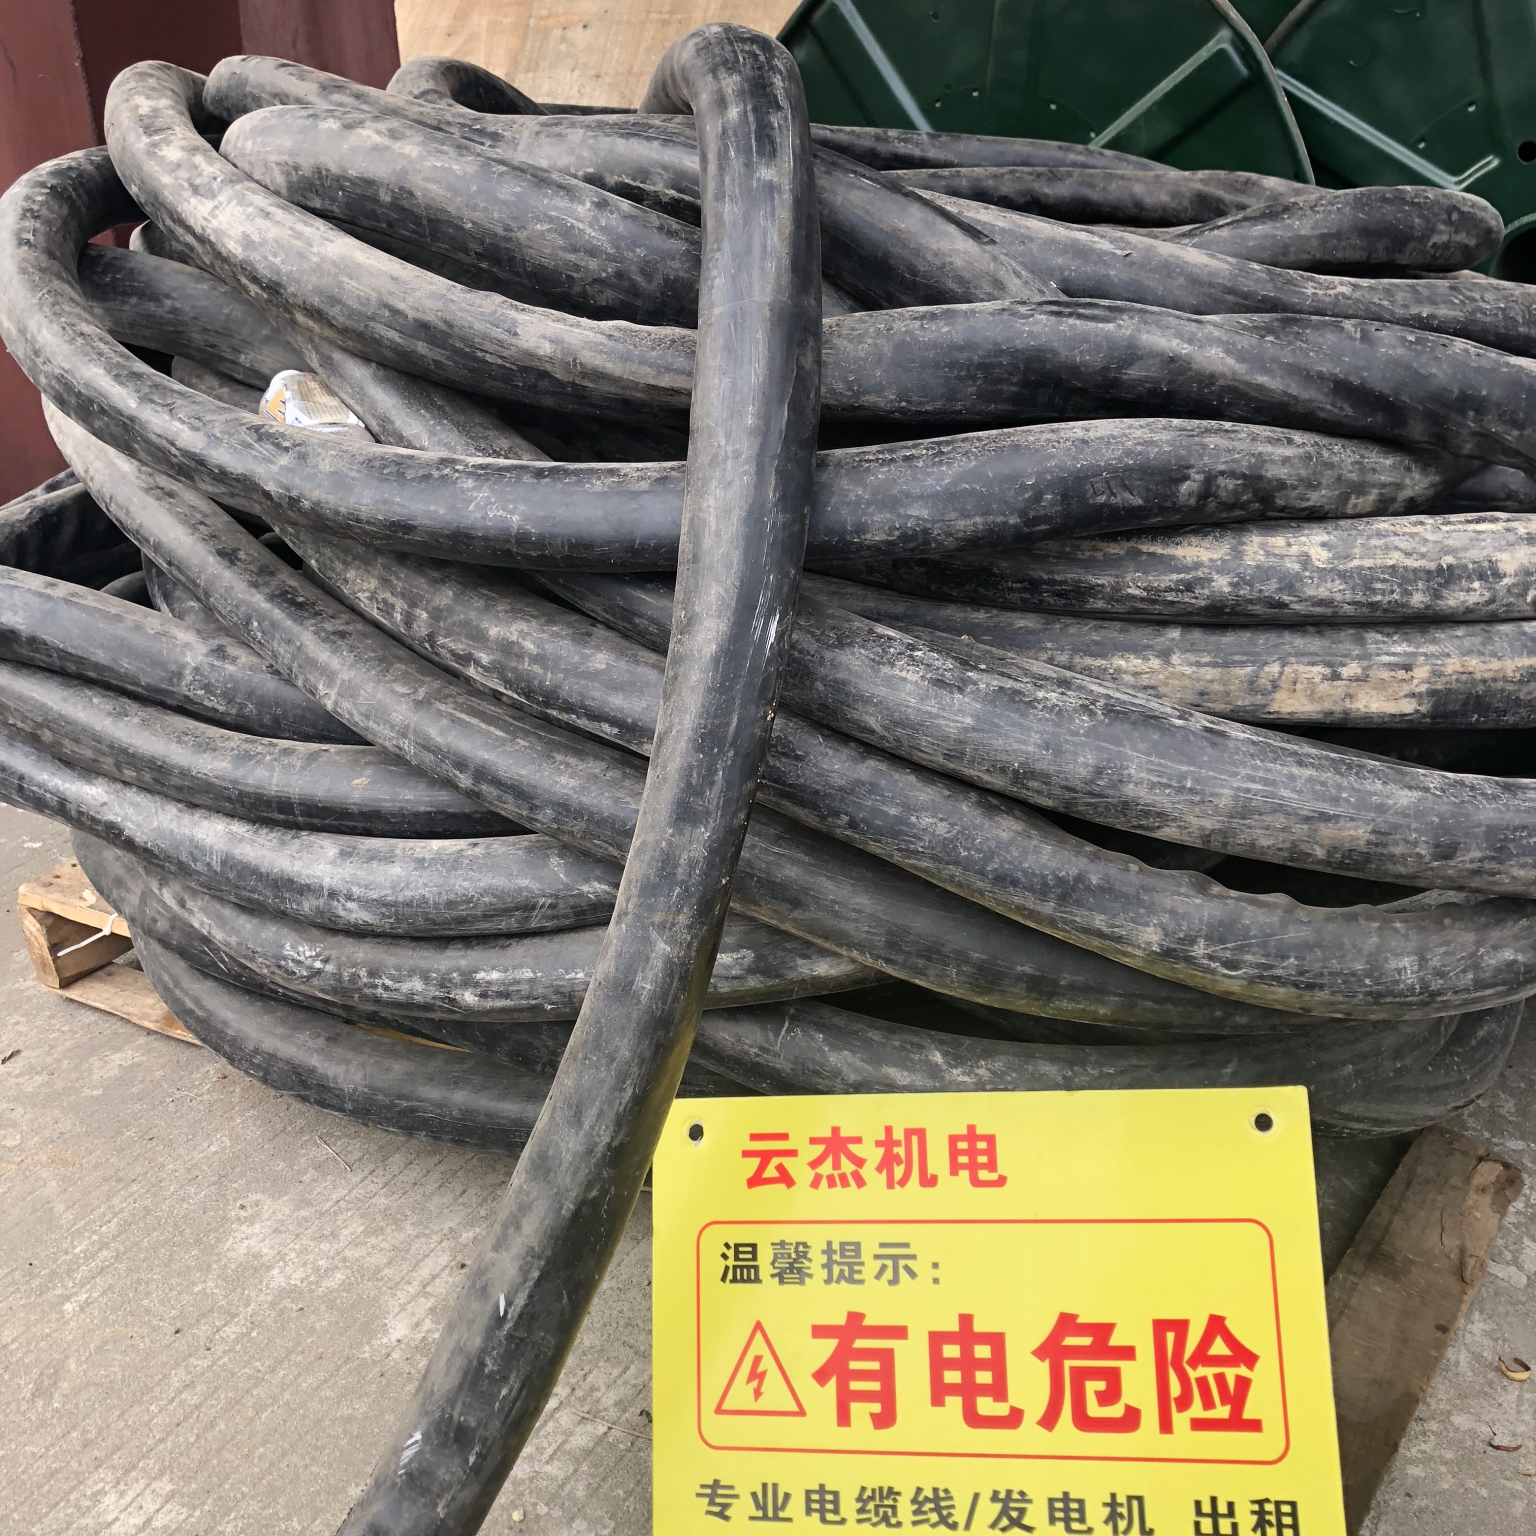 湛江美食城专用电缆线出租热线-哪有-临时出租价格